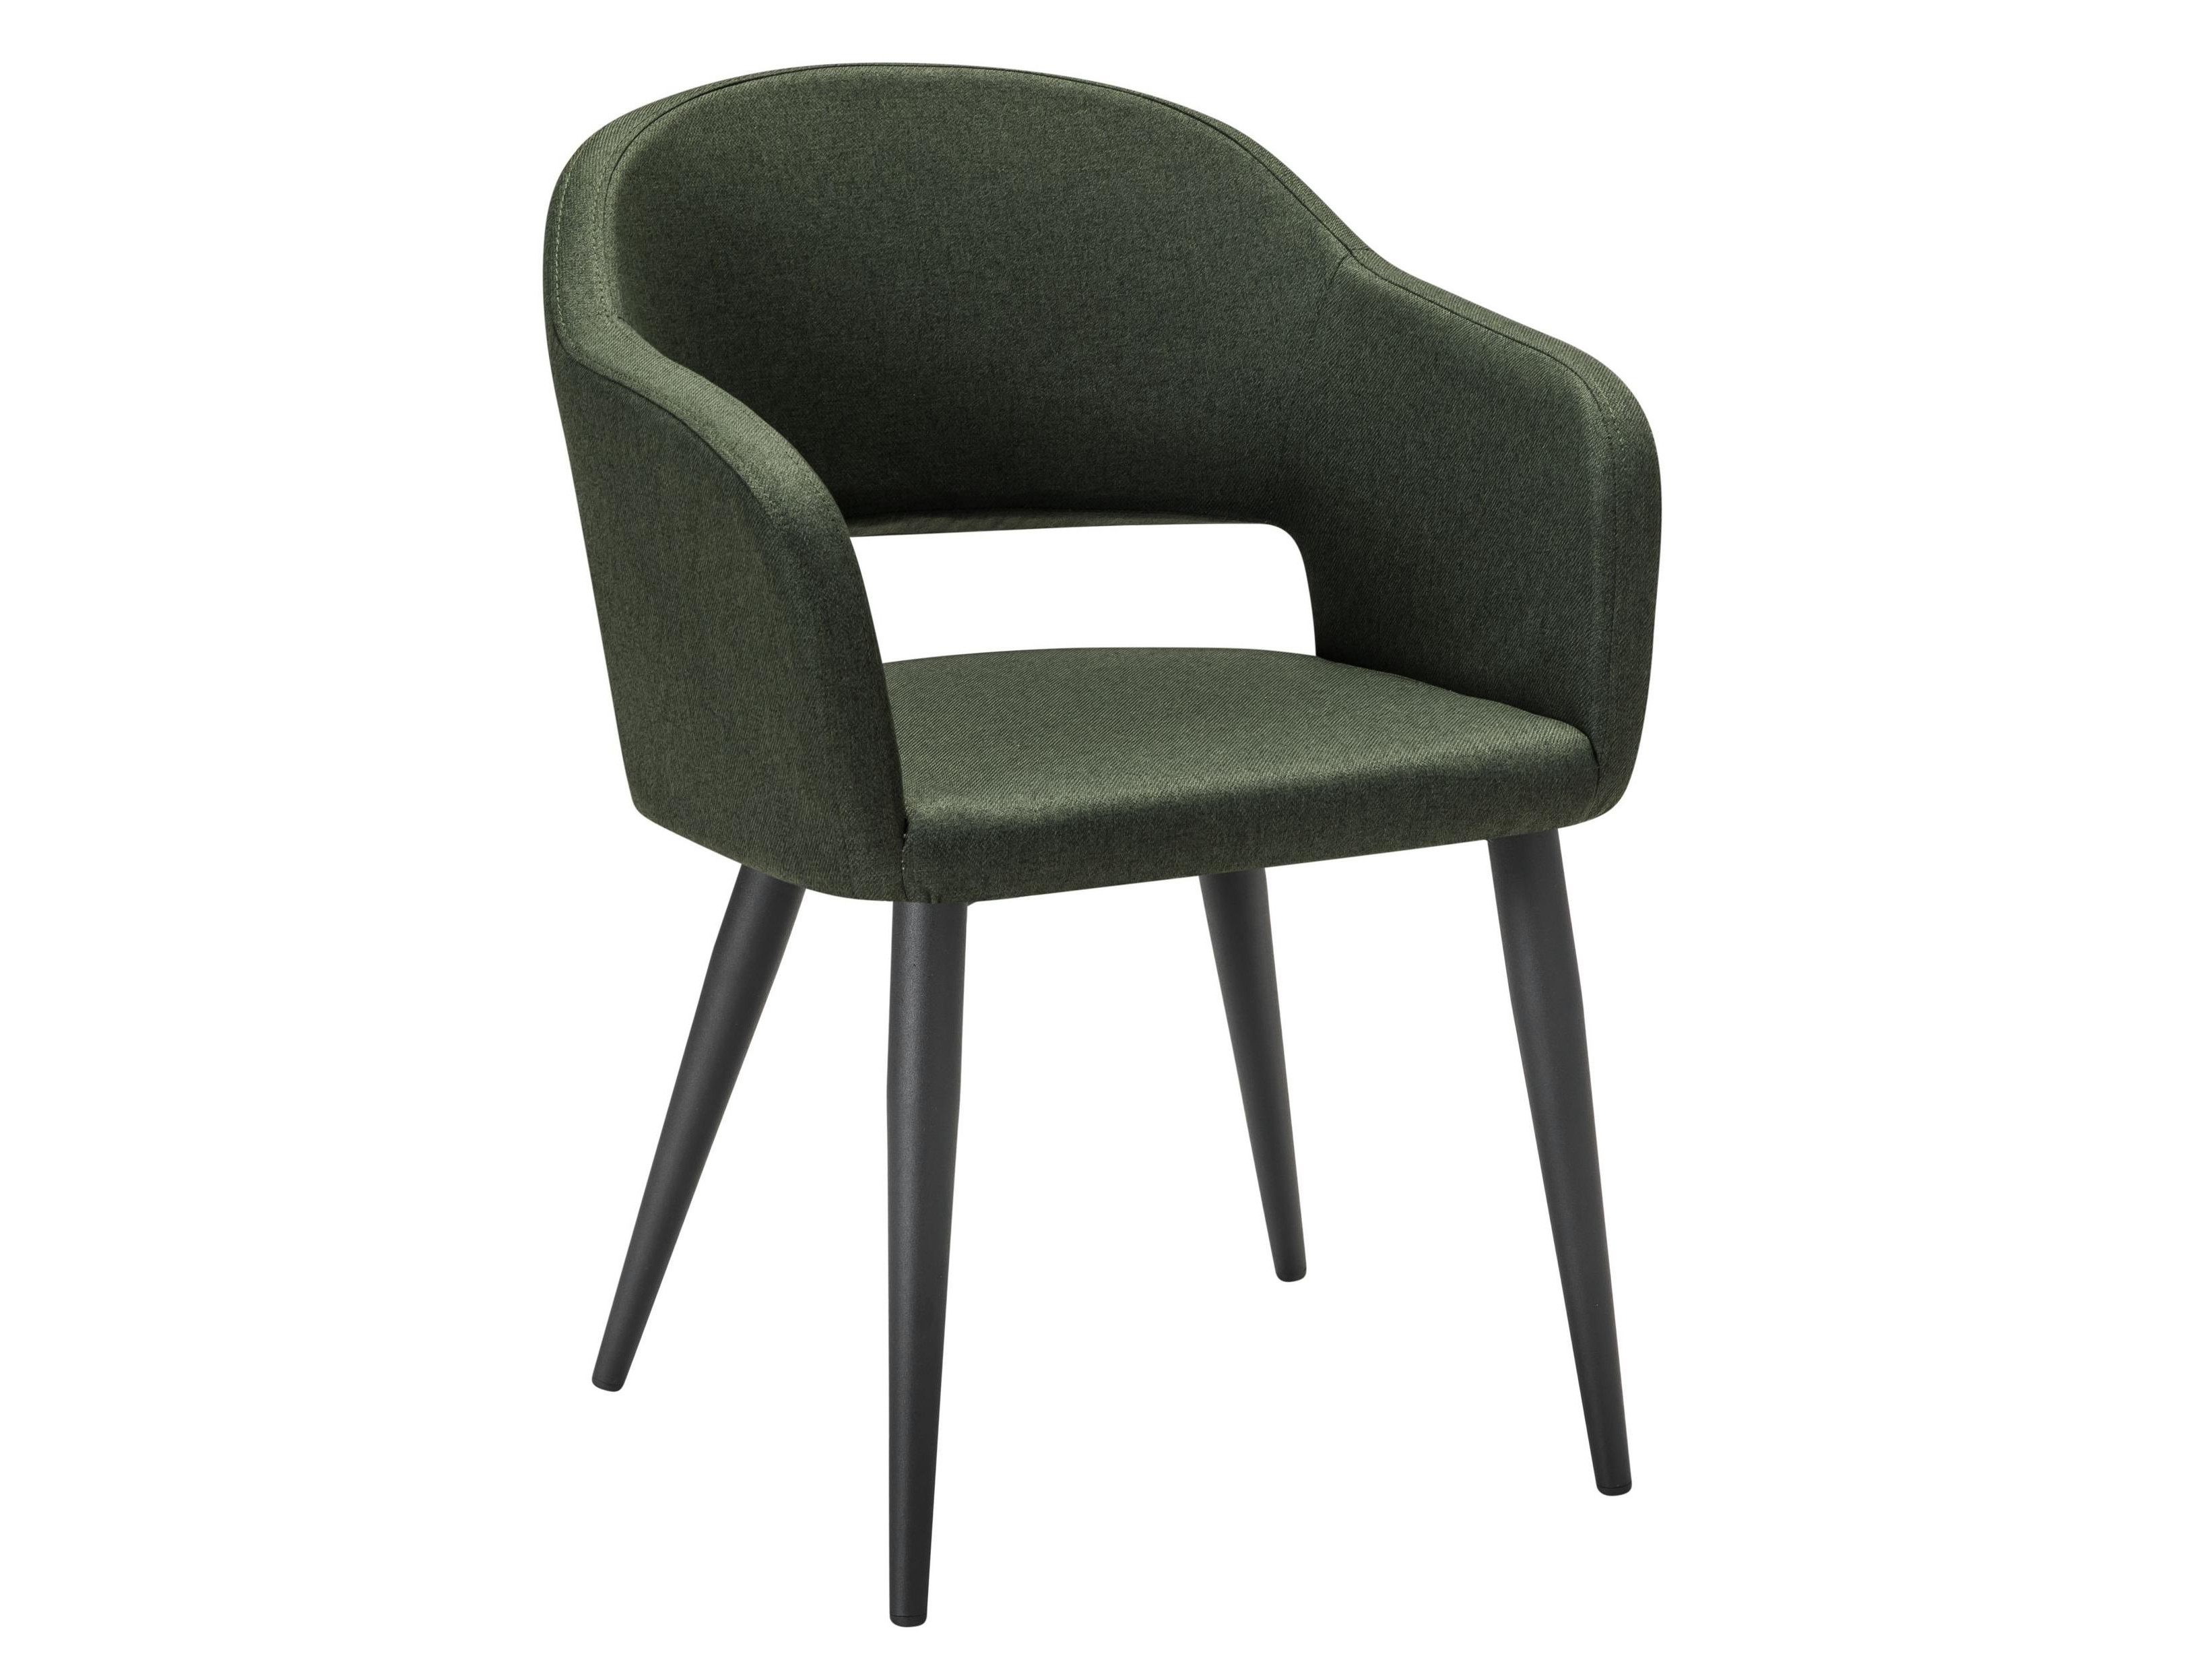 Кресло Oscar тёмно-зеленый/черный Зеленый, Металл кресло oscar измр натуральный дуб зеленый сталь